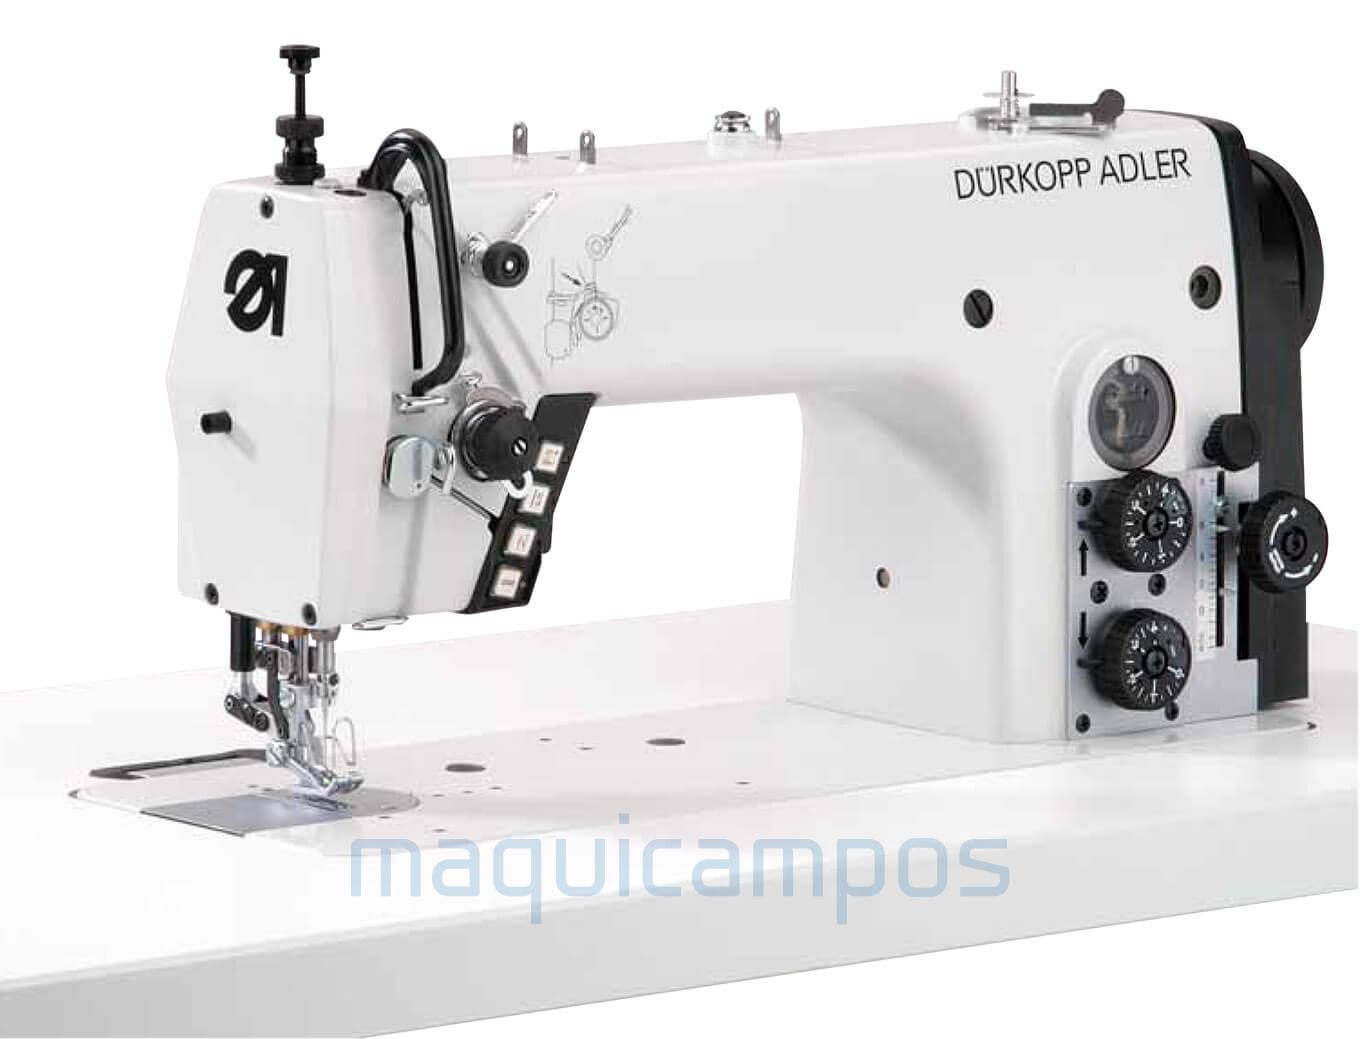 Durkopp Adler 275-140342-01 Lockstitch Sewing Machine